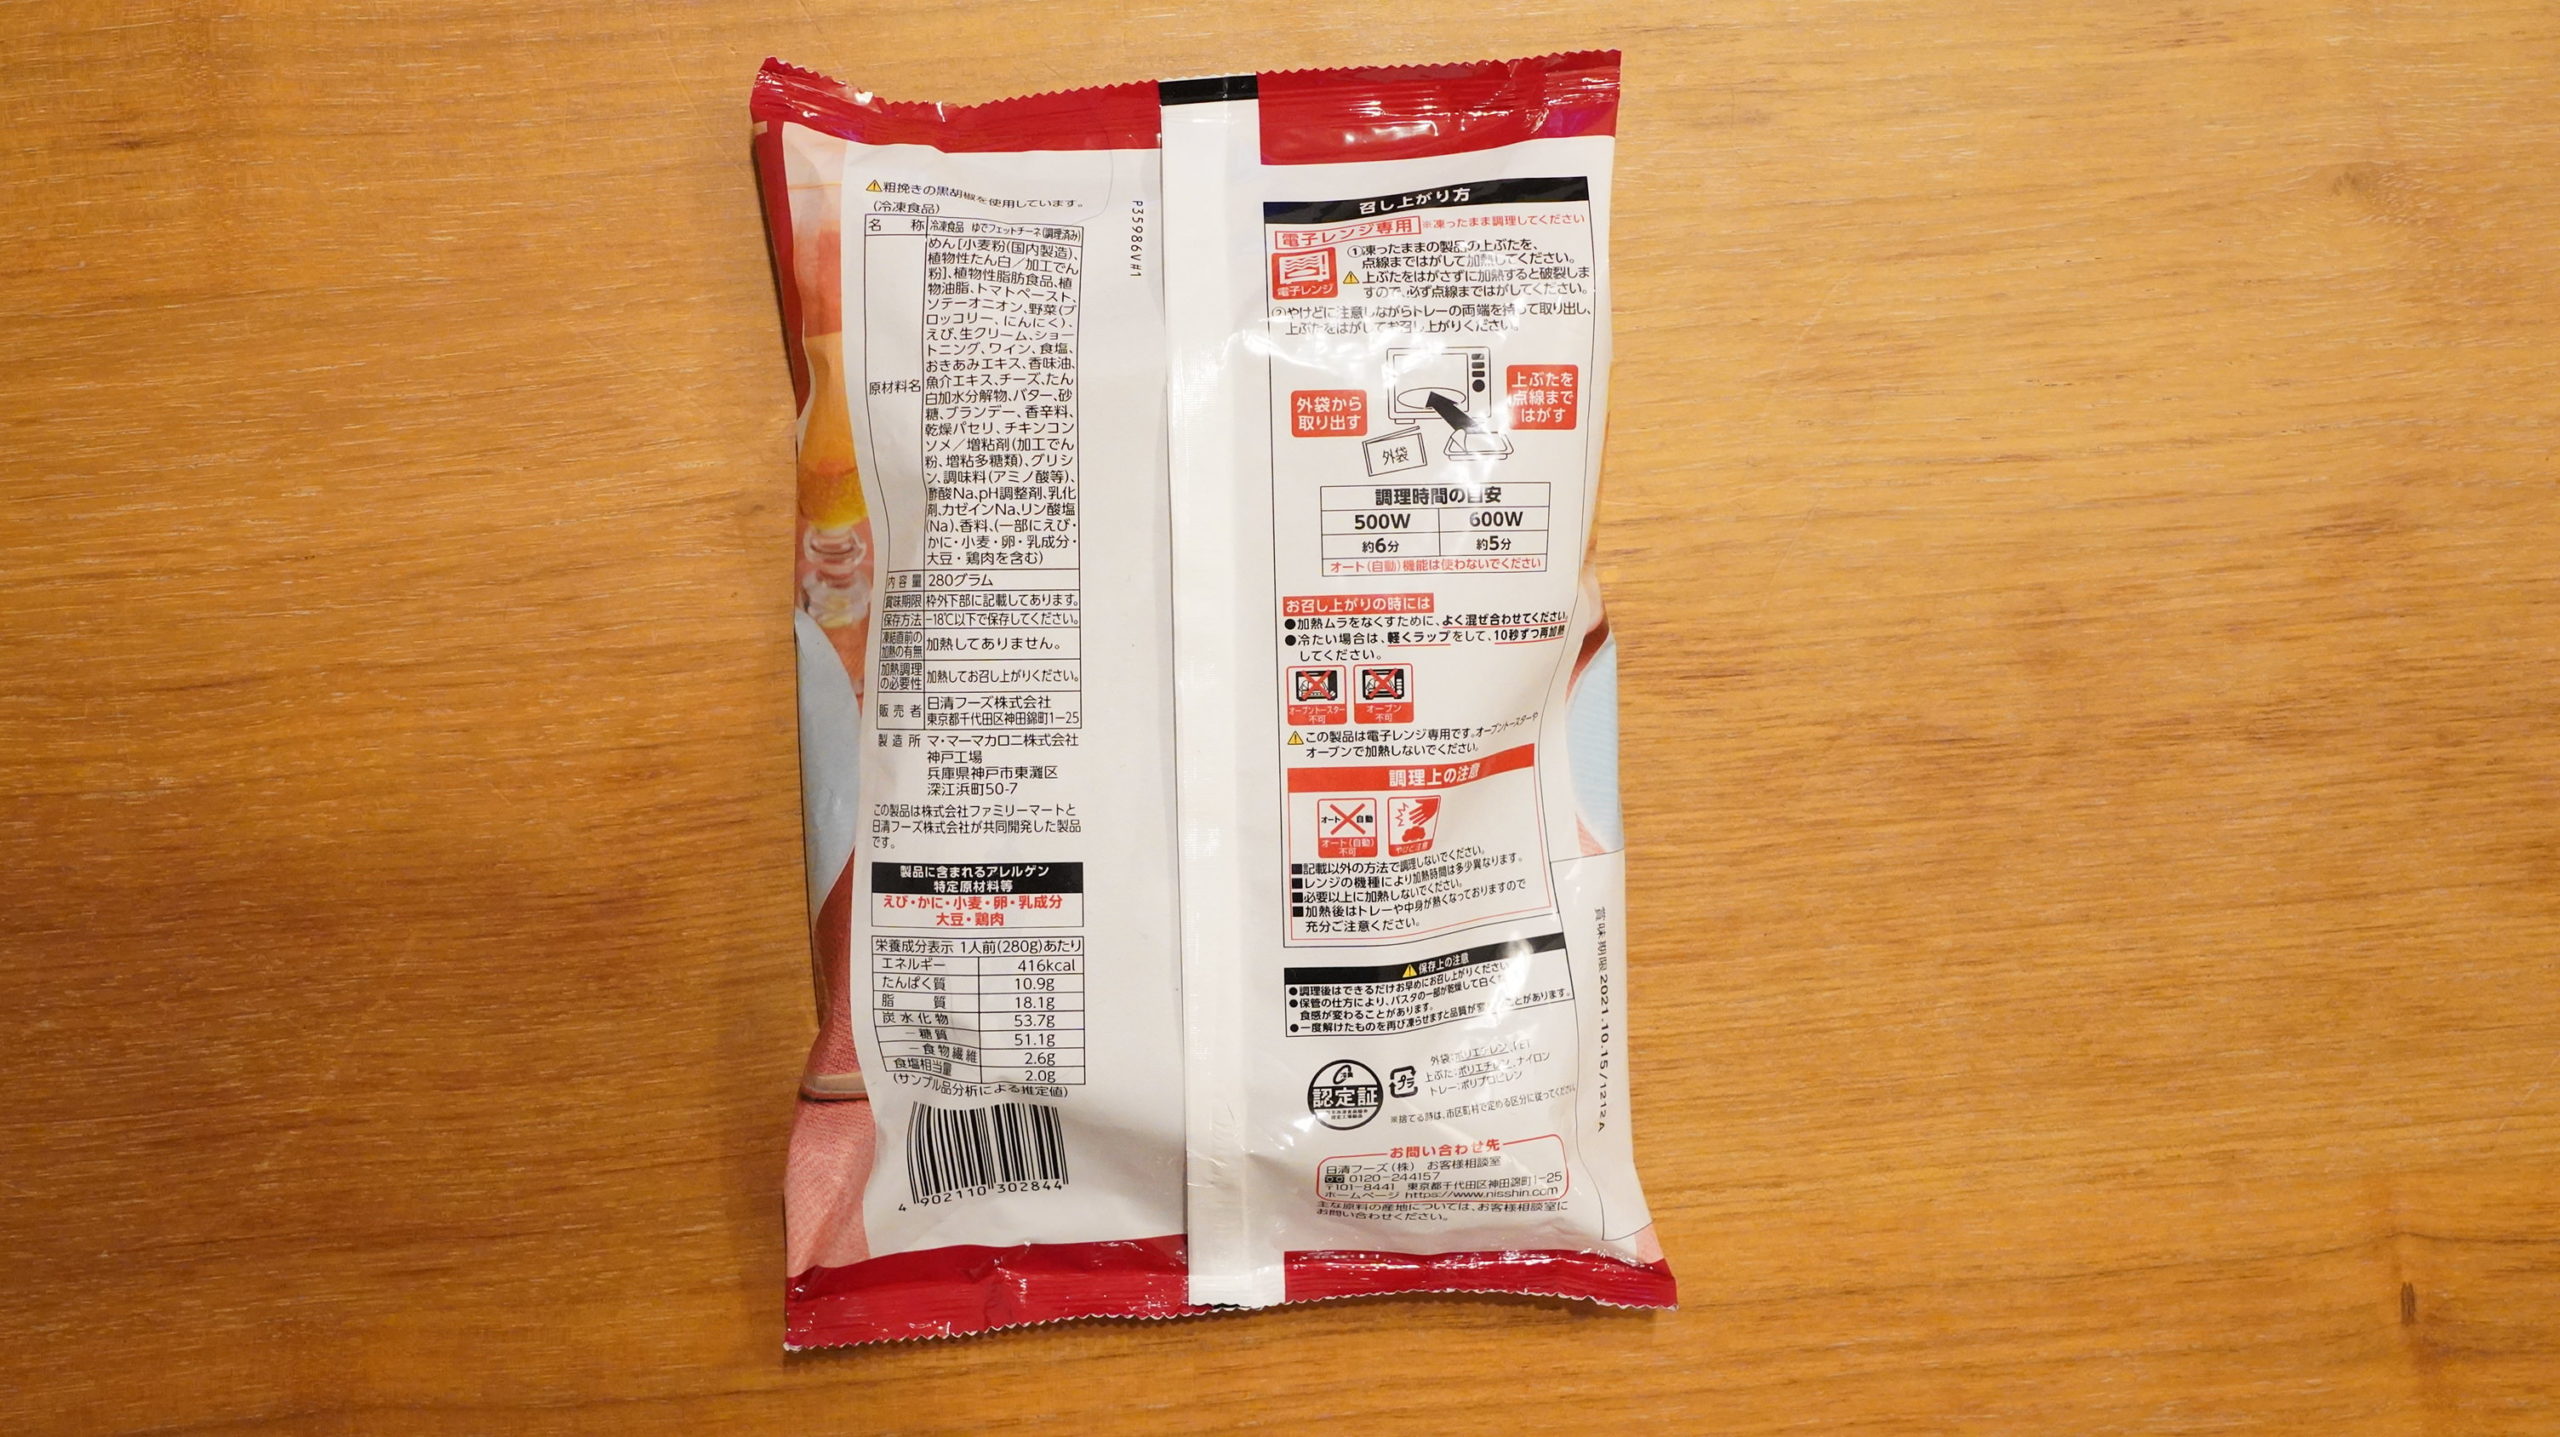 ファミリーマートの冷凍食品「生パスタ旨み豊かな海老トマトクリーム」のパッケージ裏面の写真